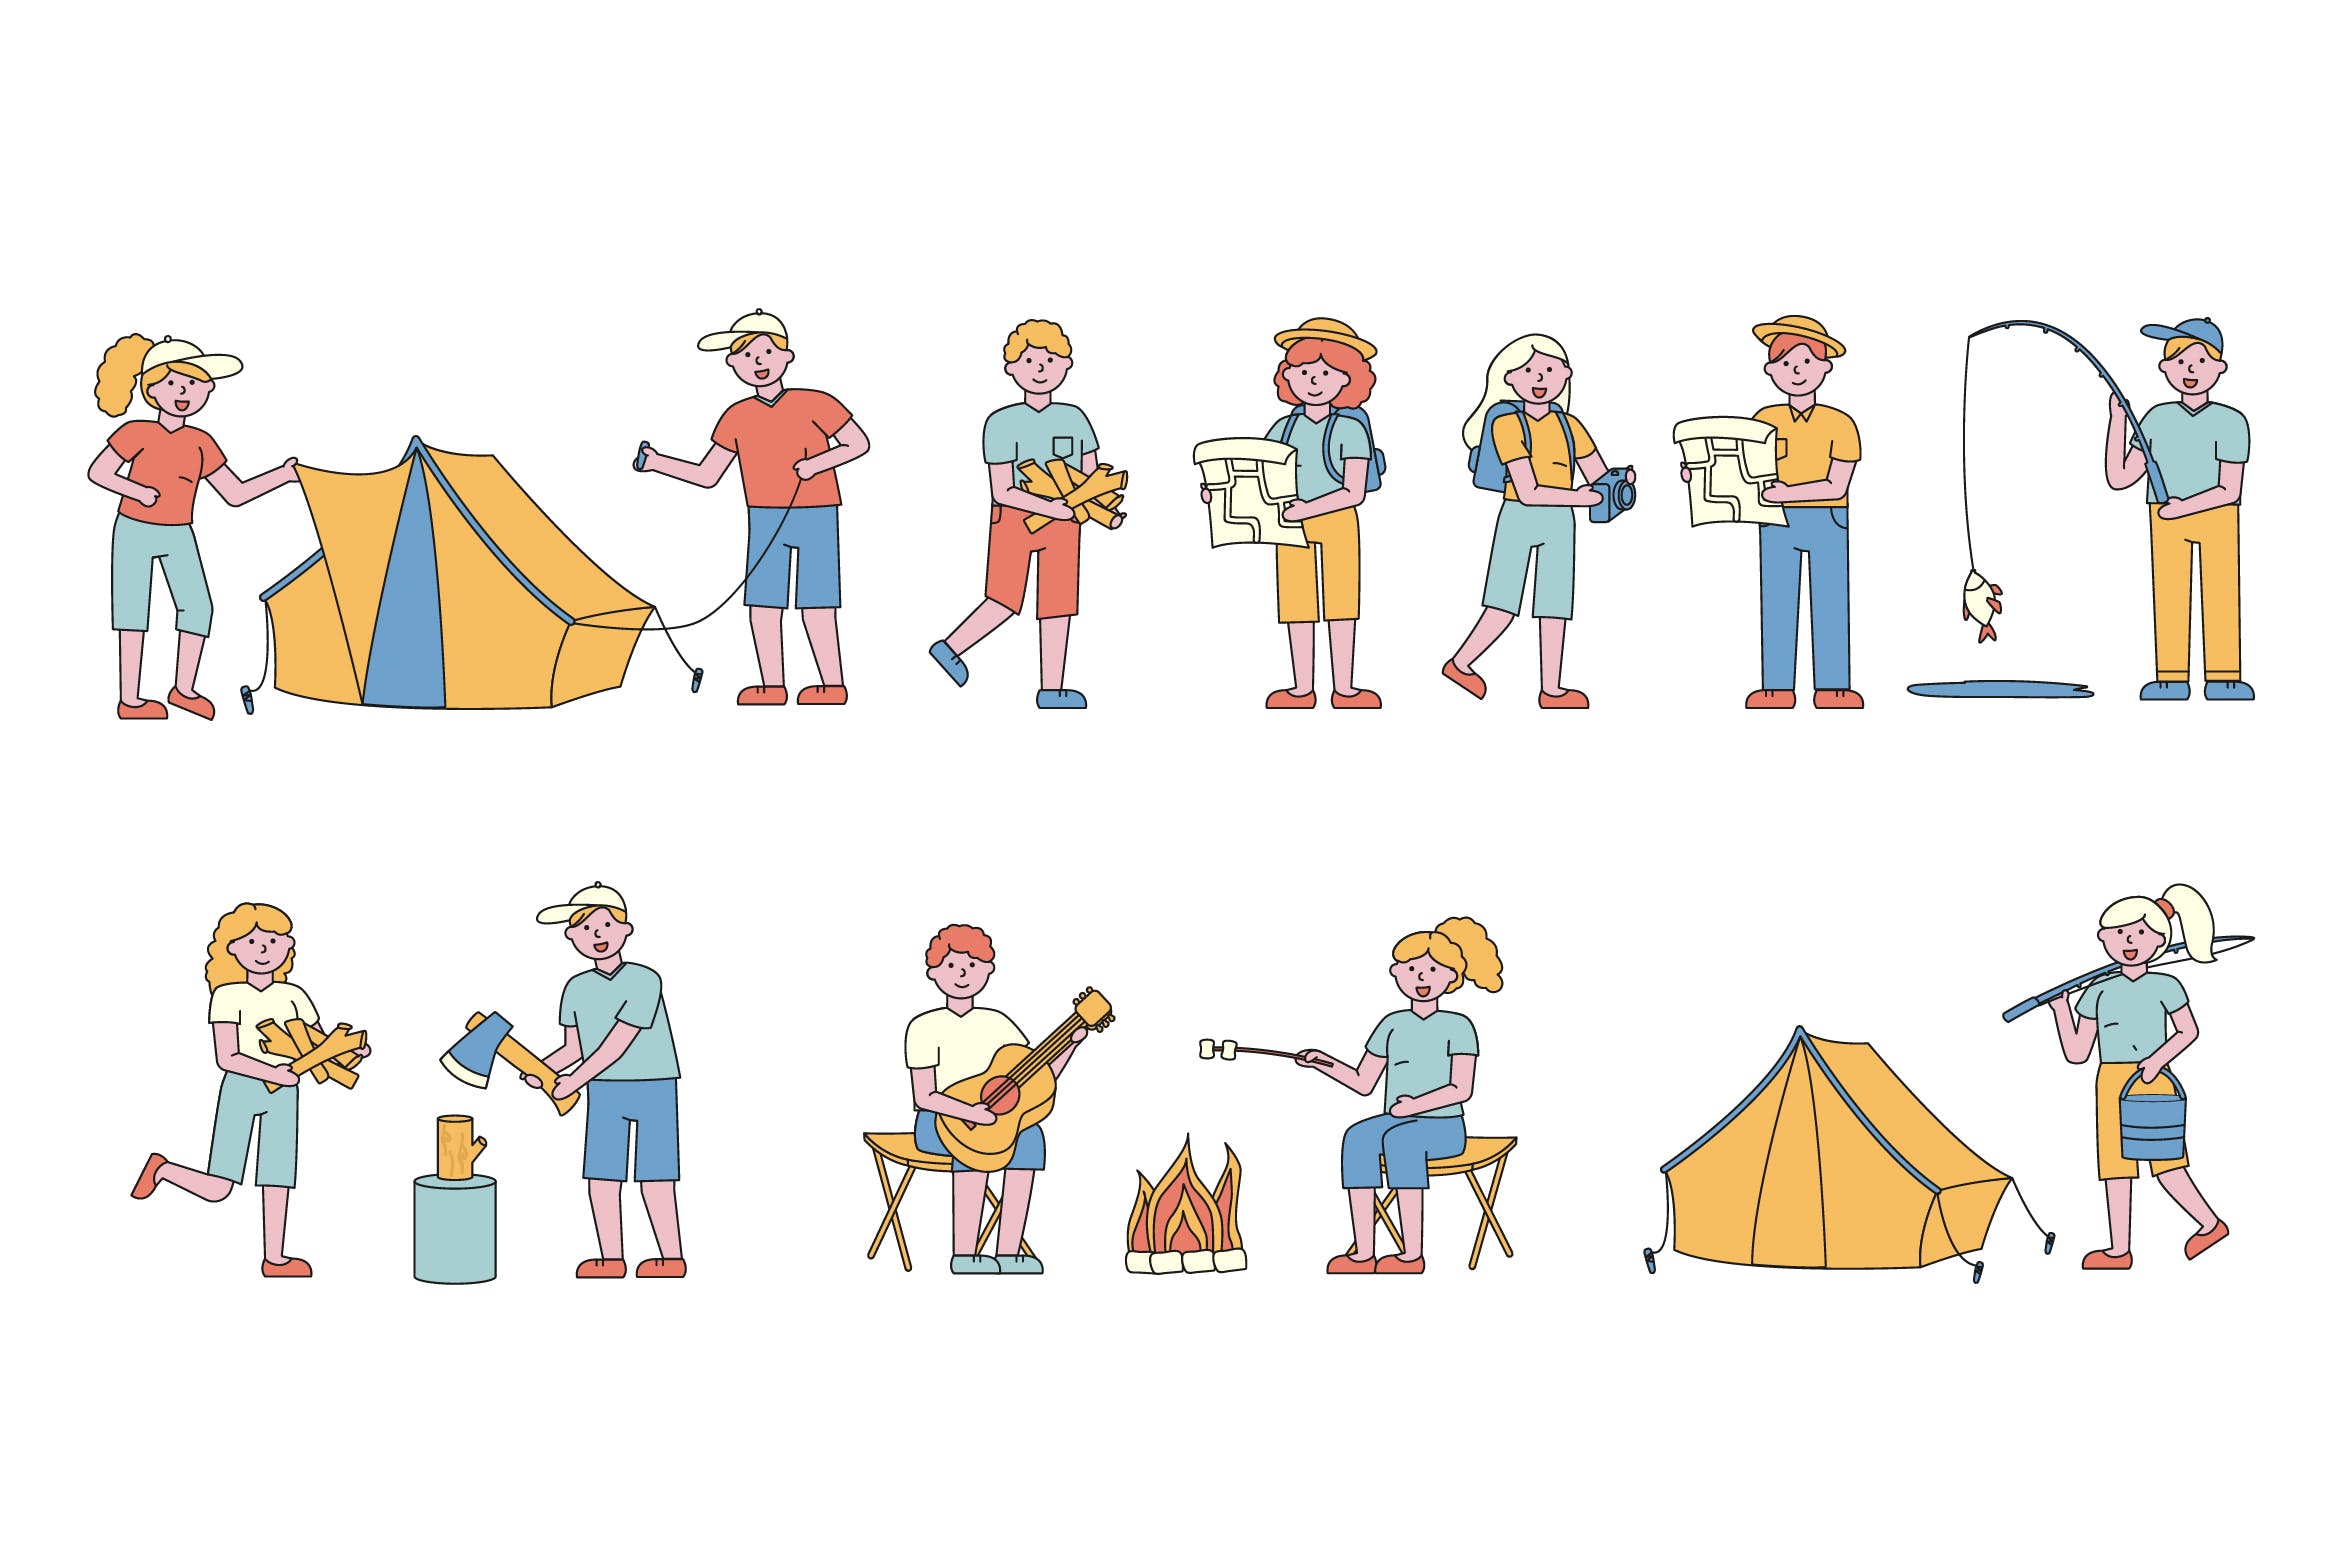 野营户外运动主题人物形象线条艺术矢量插画16设计网精选素材 Campers Lineart People Character Collection插图